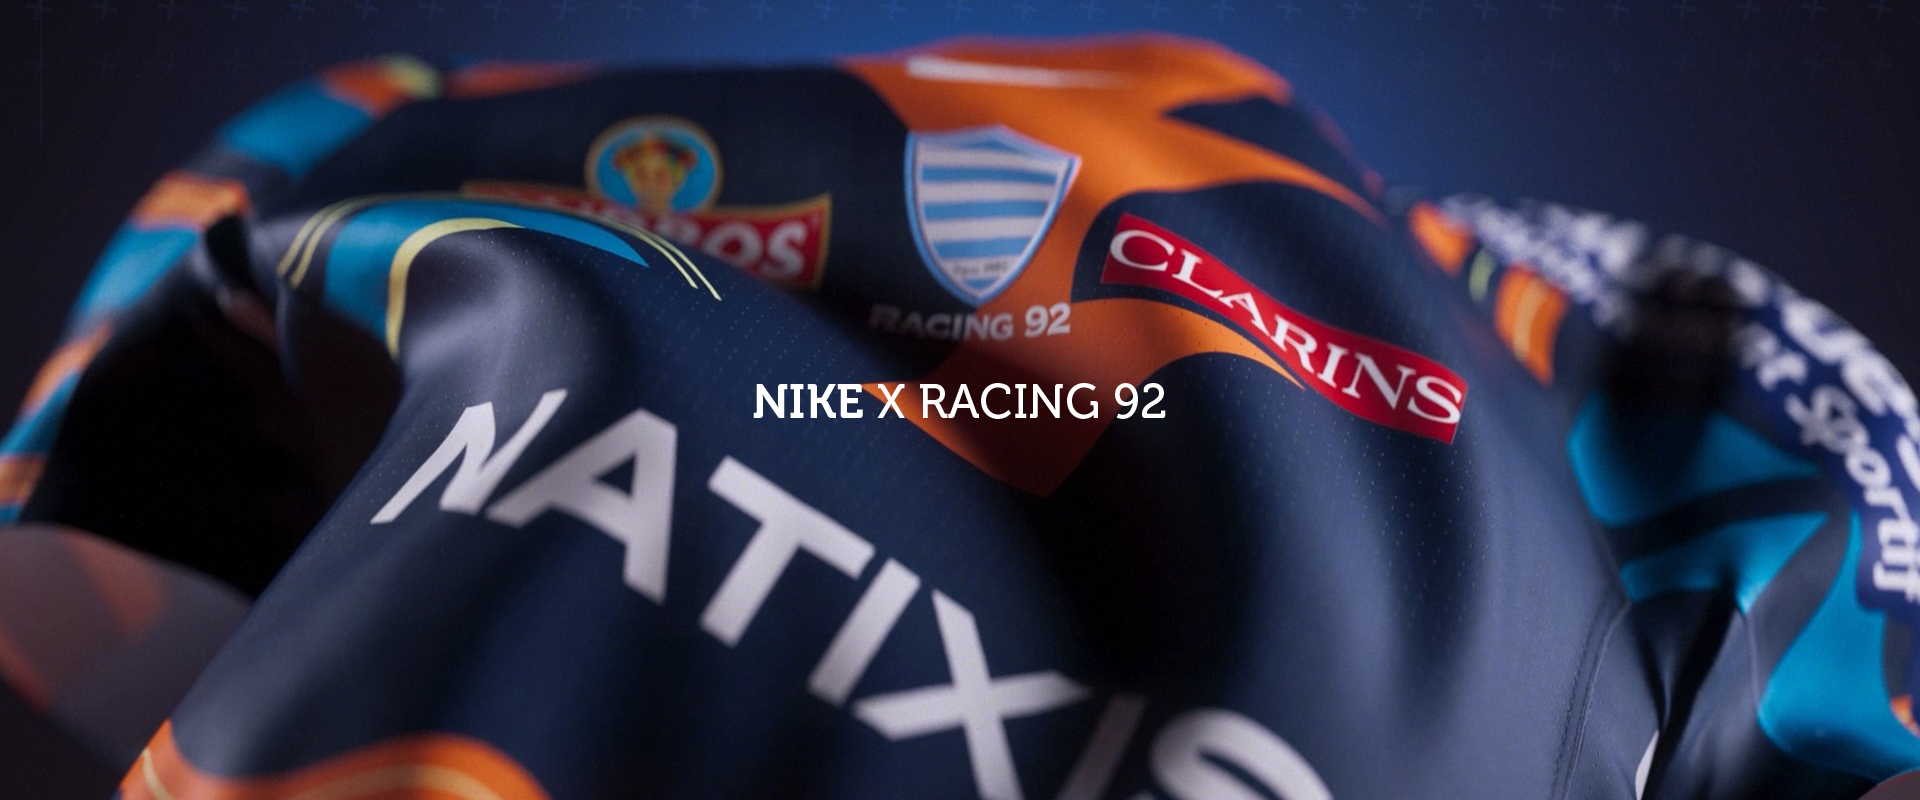 Nike x Racing 92